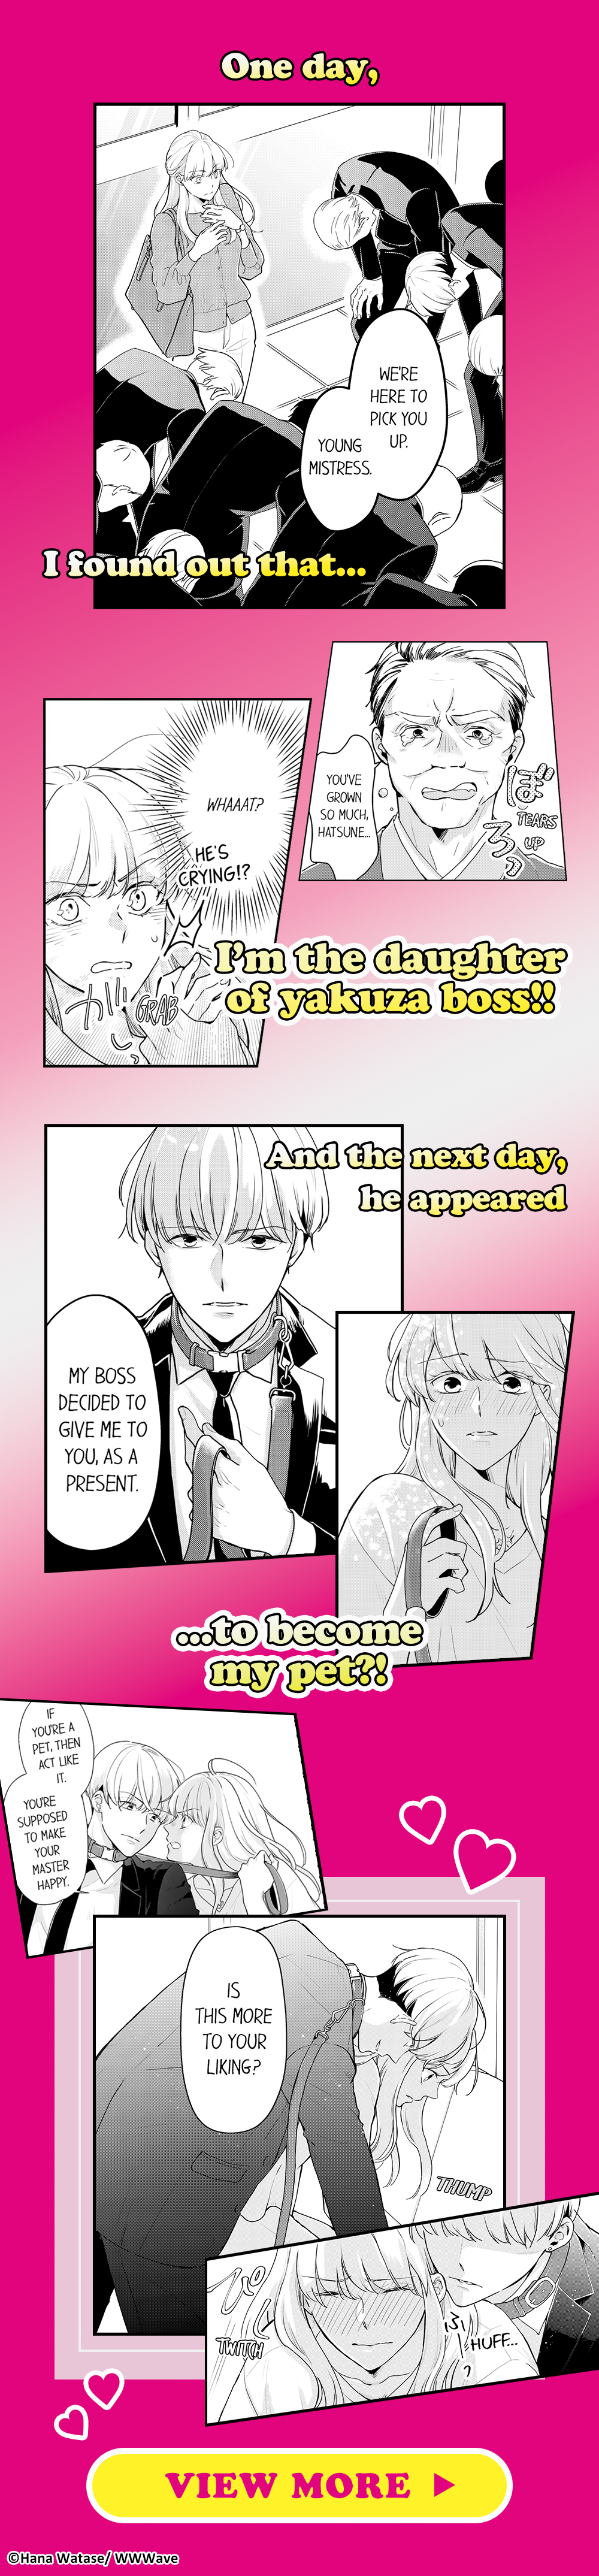 My Pet Is A Yakuza Manga Must-Read Titles!|MangaPlaza